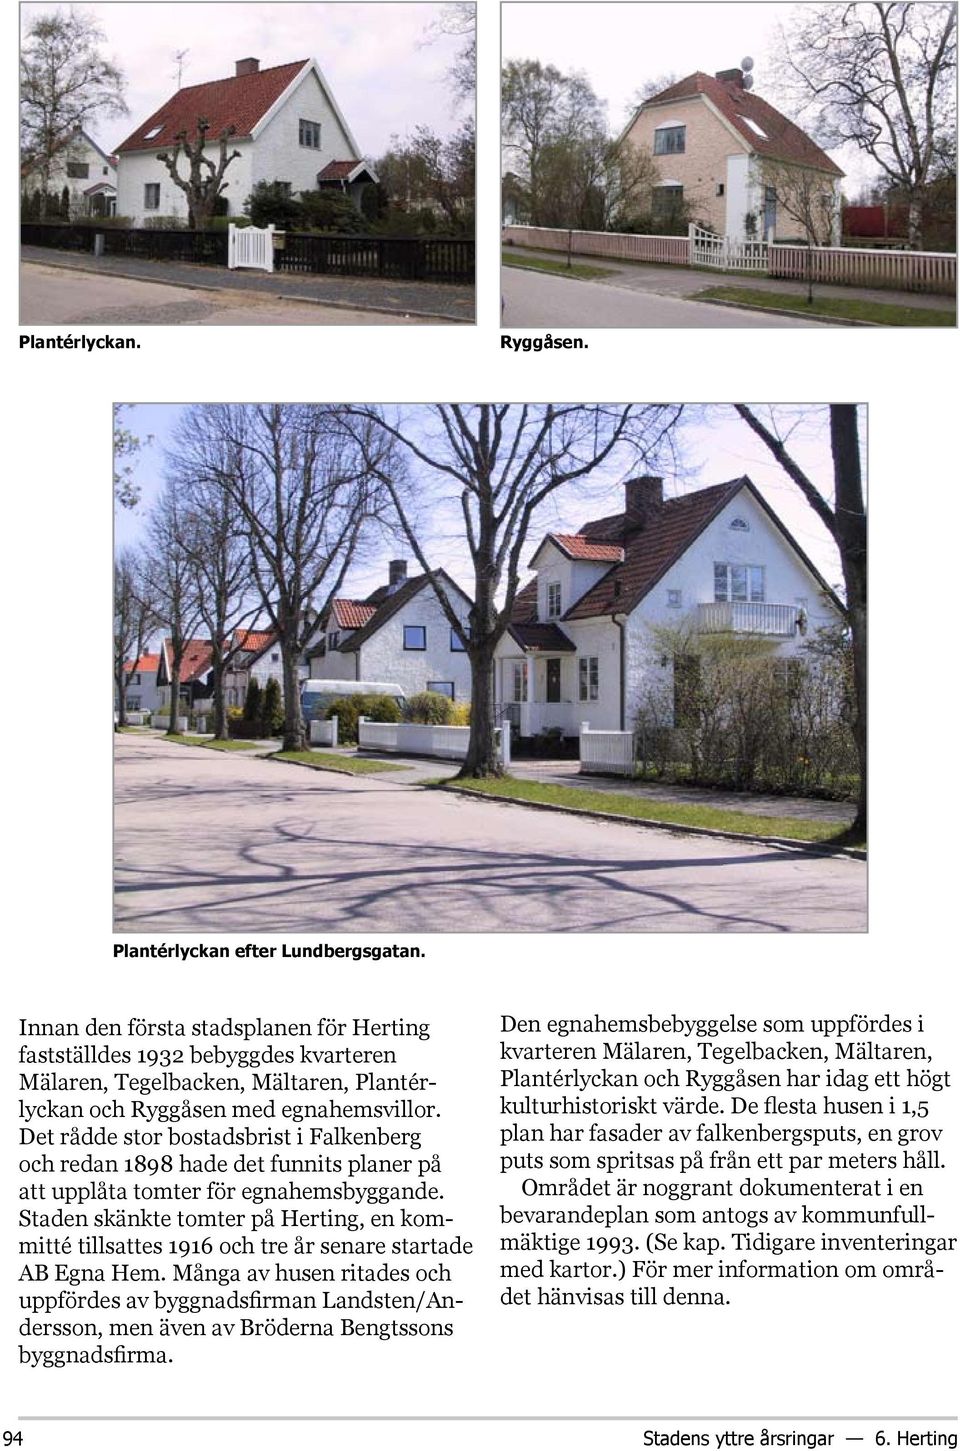 Det rådde stor bostadsbrist i Falkenberg och redan 1898 hade det funnits planer på att upplåta tomter för egnahemsbyggande.